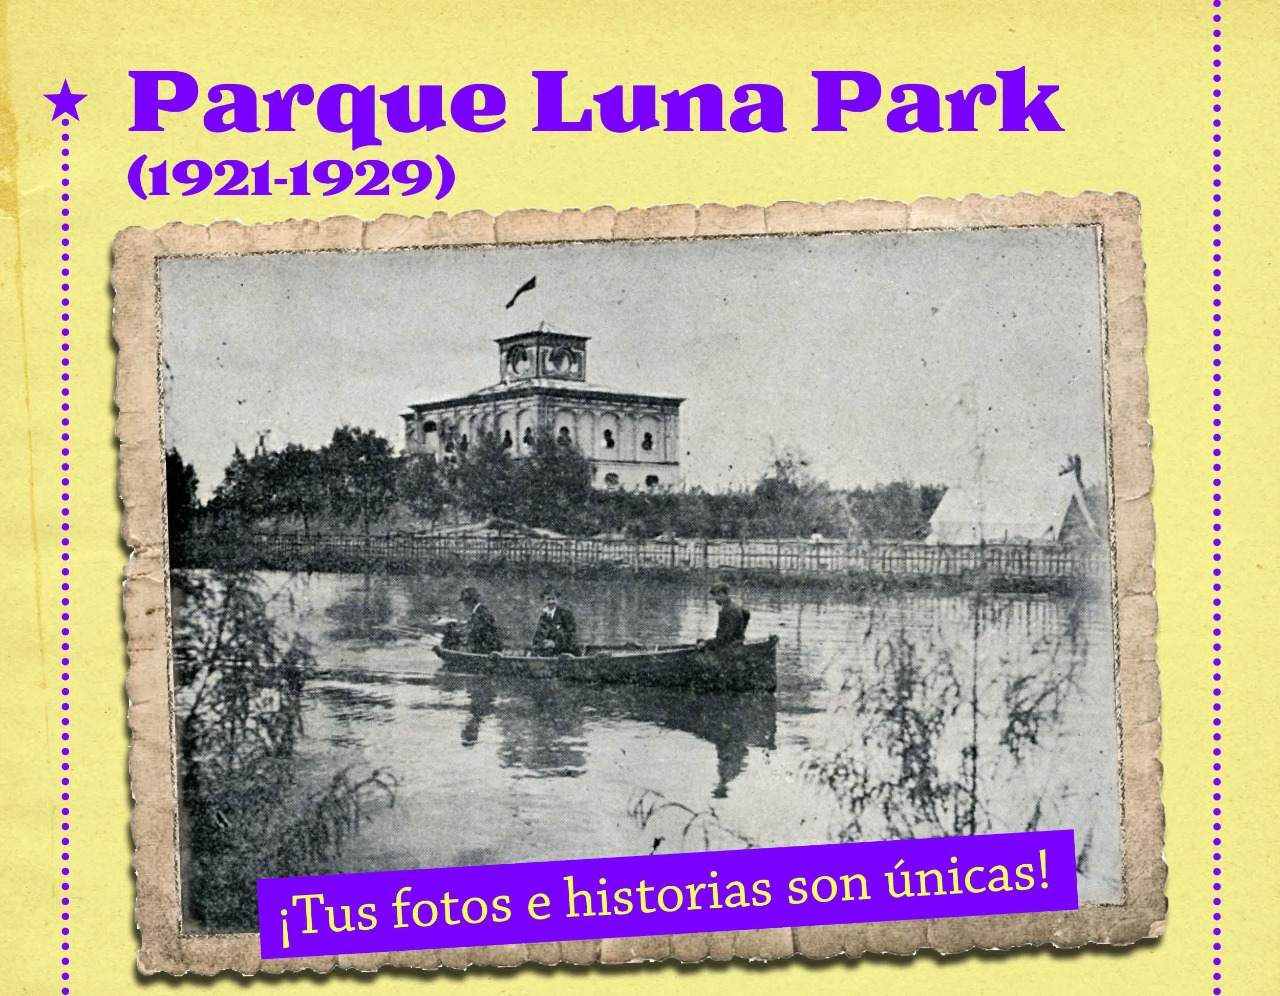 Parque Luna Park